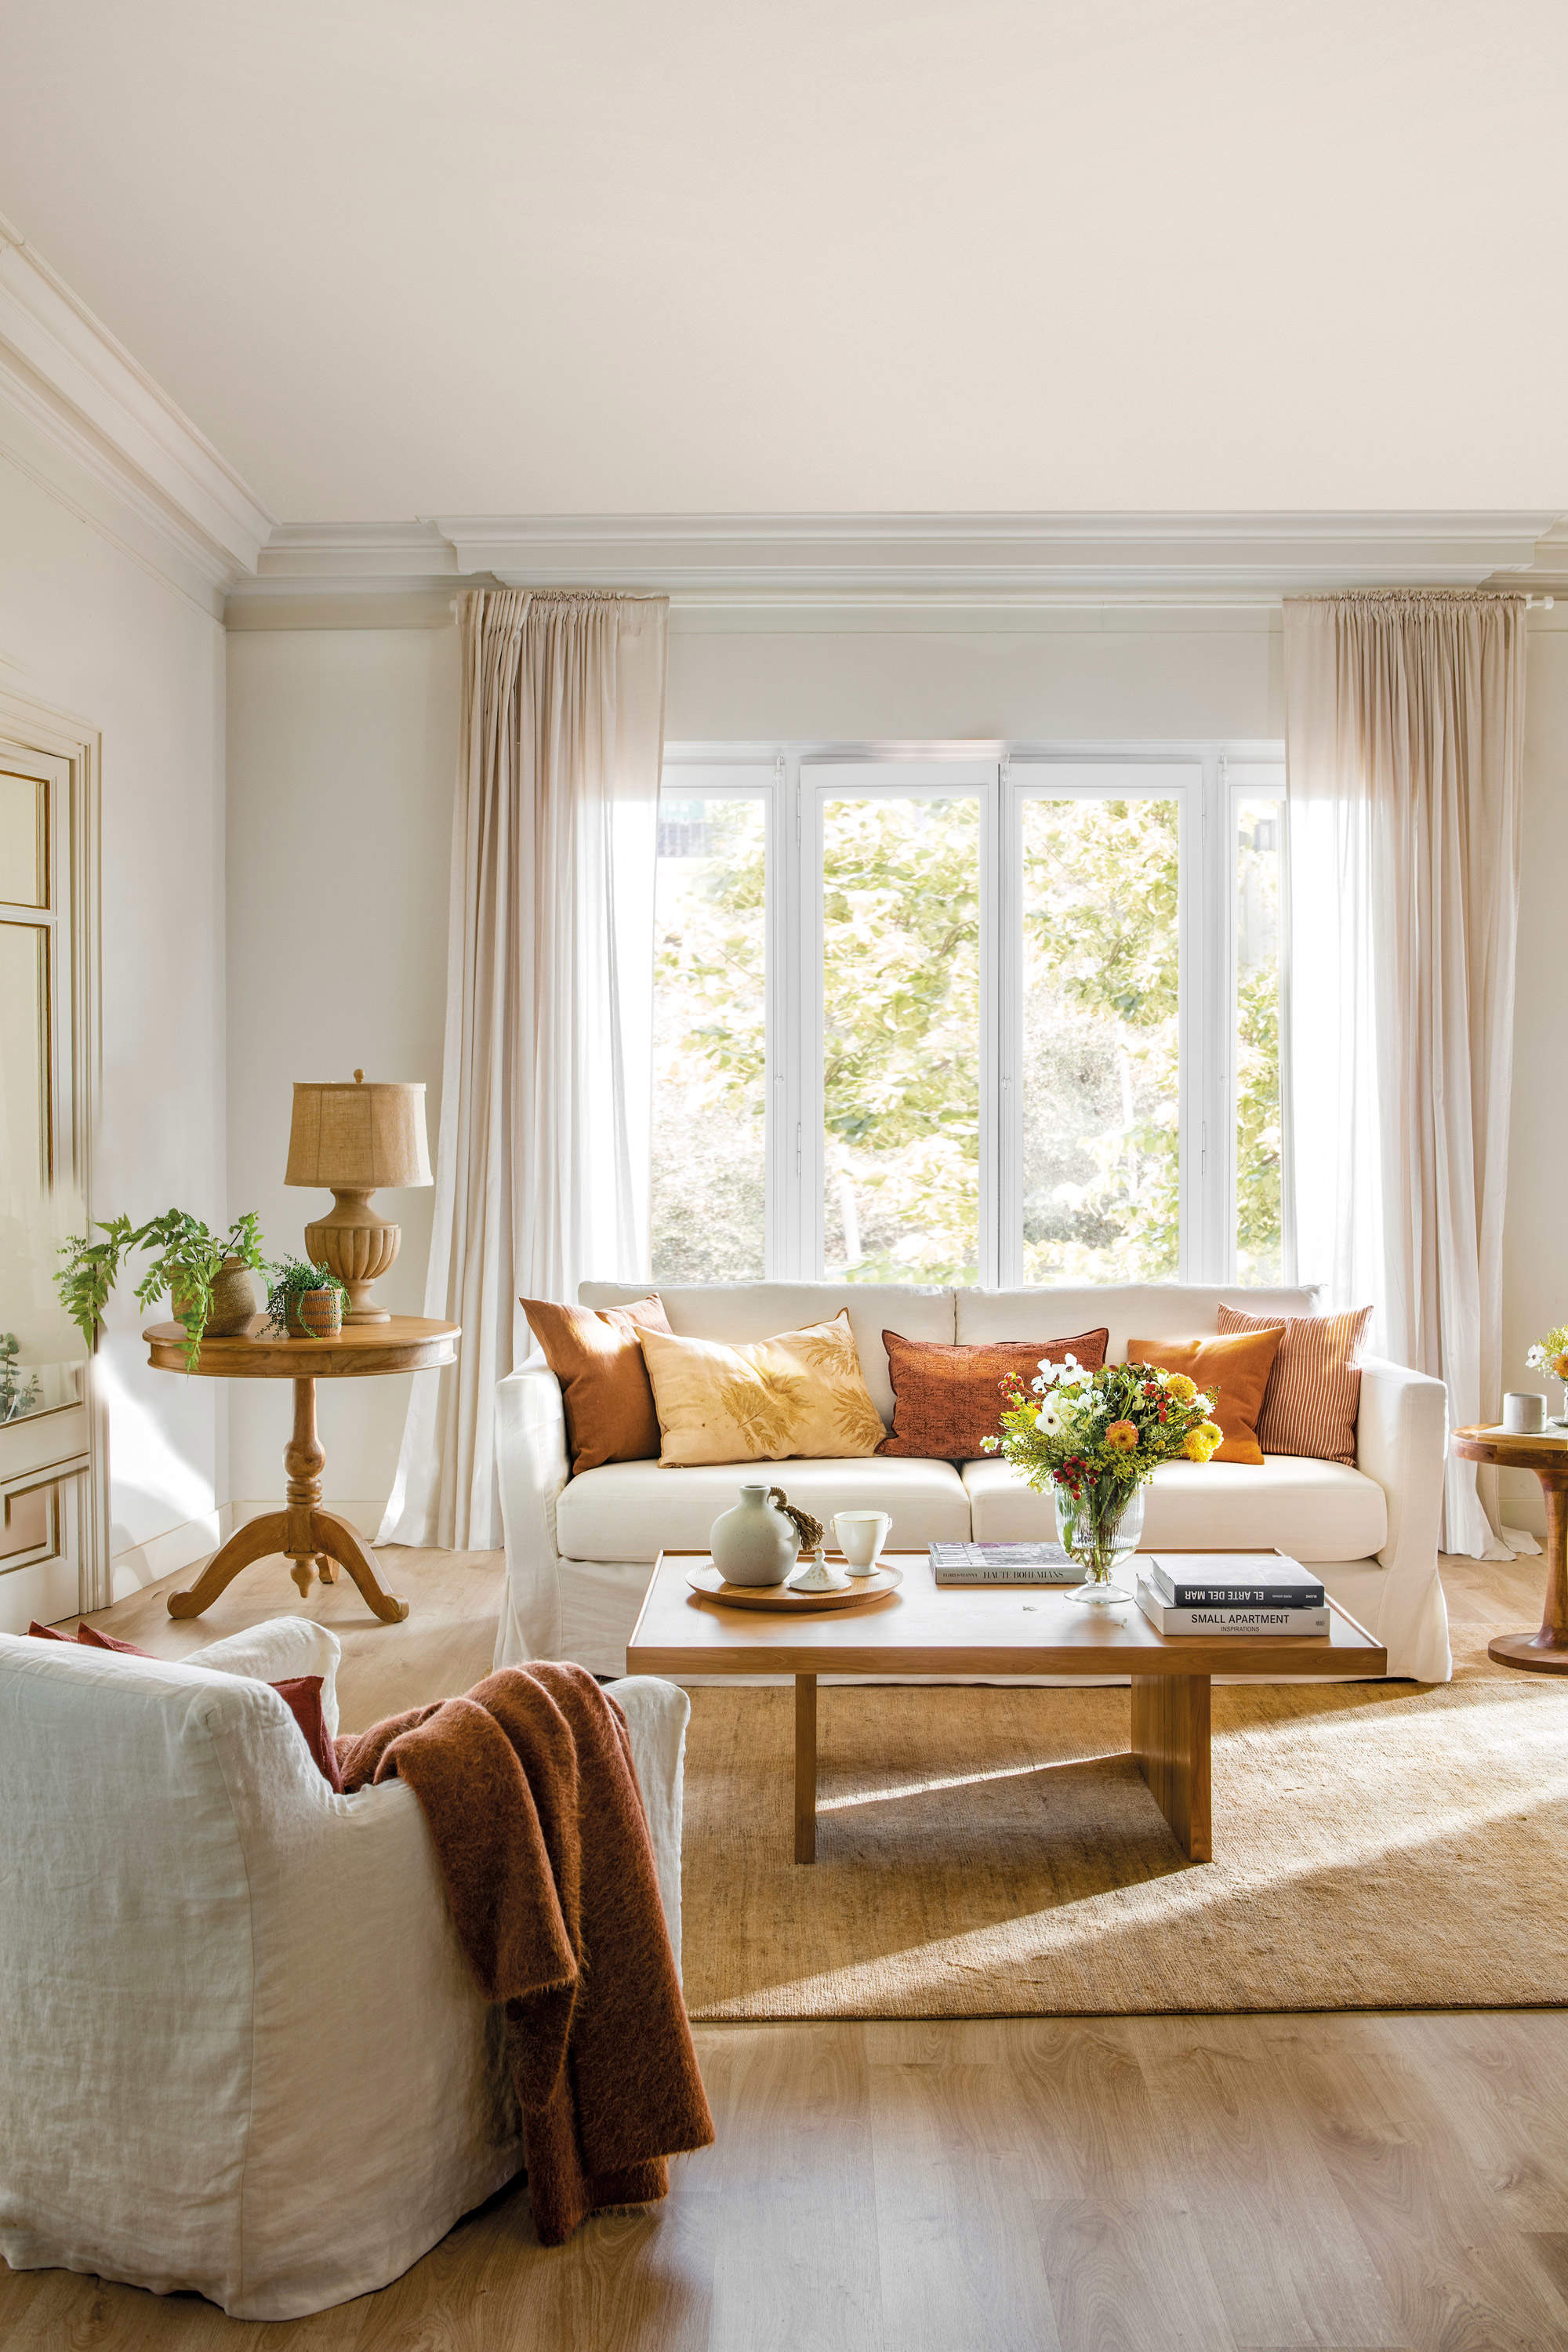 Salón con sofás blancos, cojines en colores cálidos y muebles de madera.